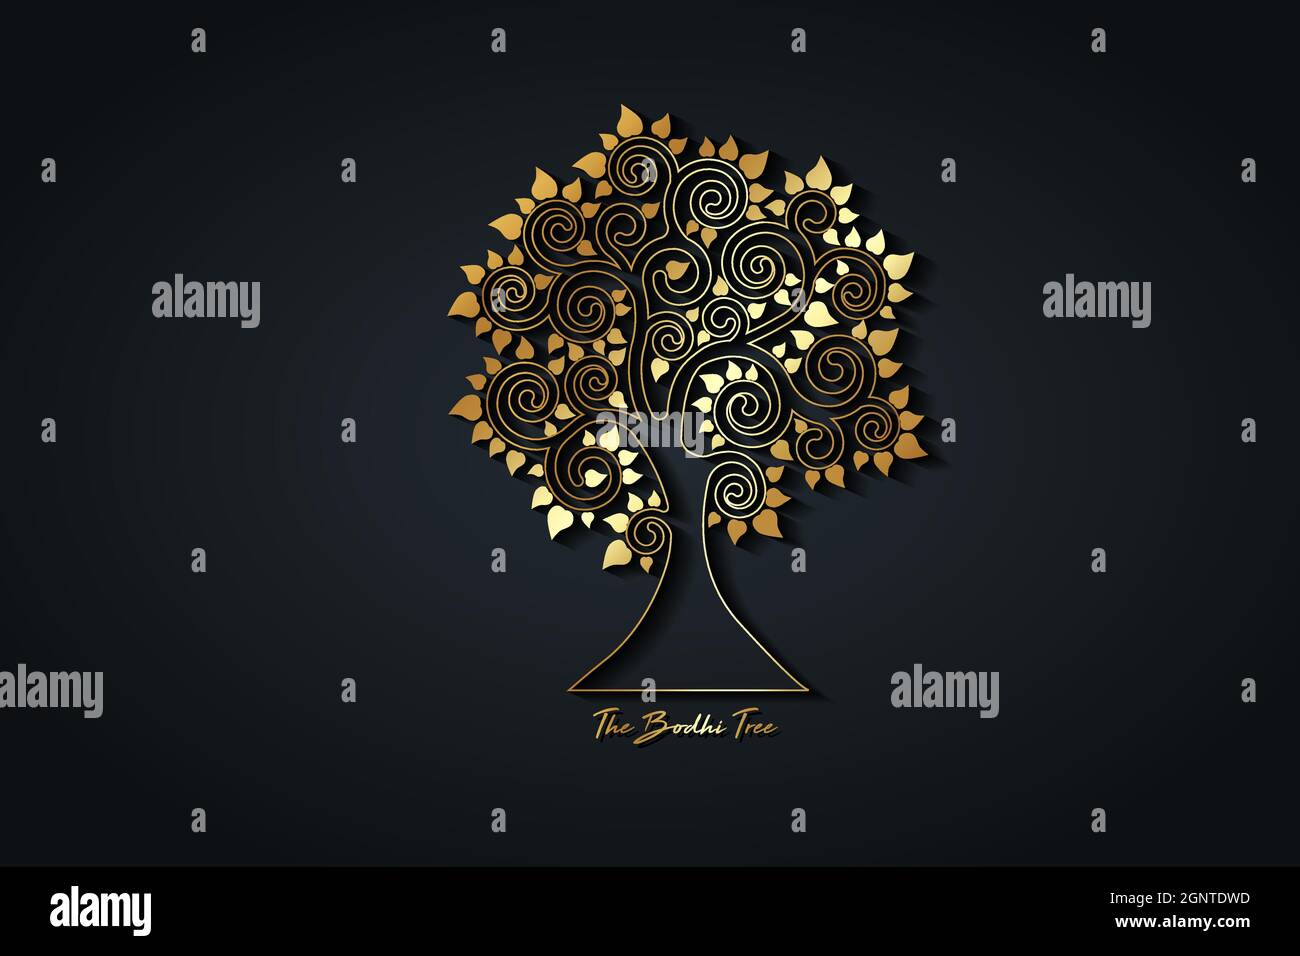 Die Bodhi-Baum-Gold-Logo-Vorlage, Baum des Lebens Konzept, Heilige Feige mit herzförmigen Blättern, Vesak Tag, goldenen Luxus-Silhouette, Icon-Vektor zu isolieren Stock Vektor